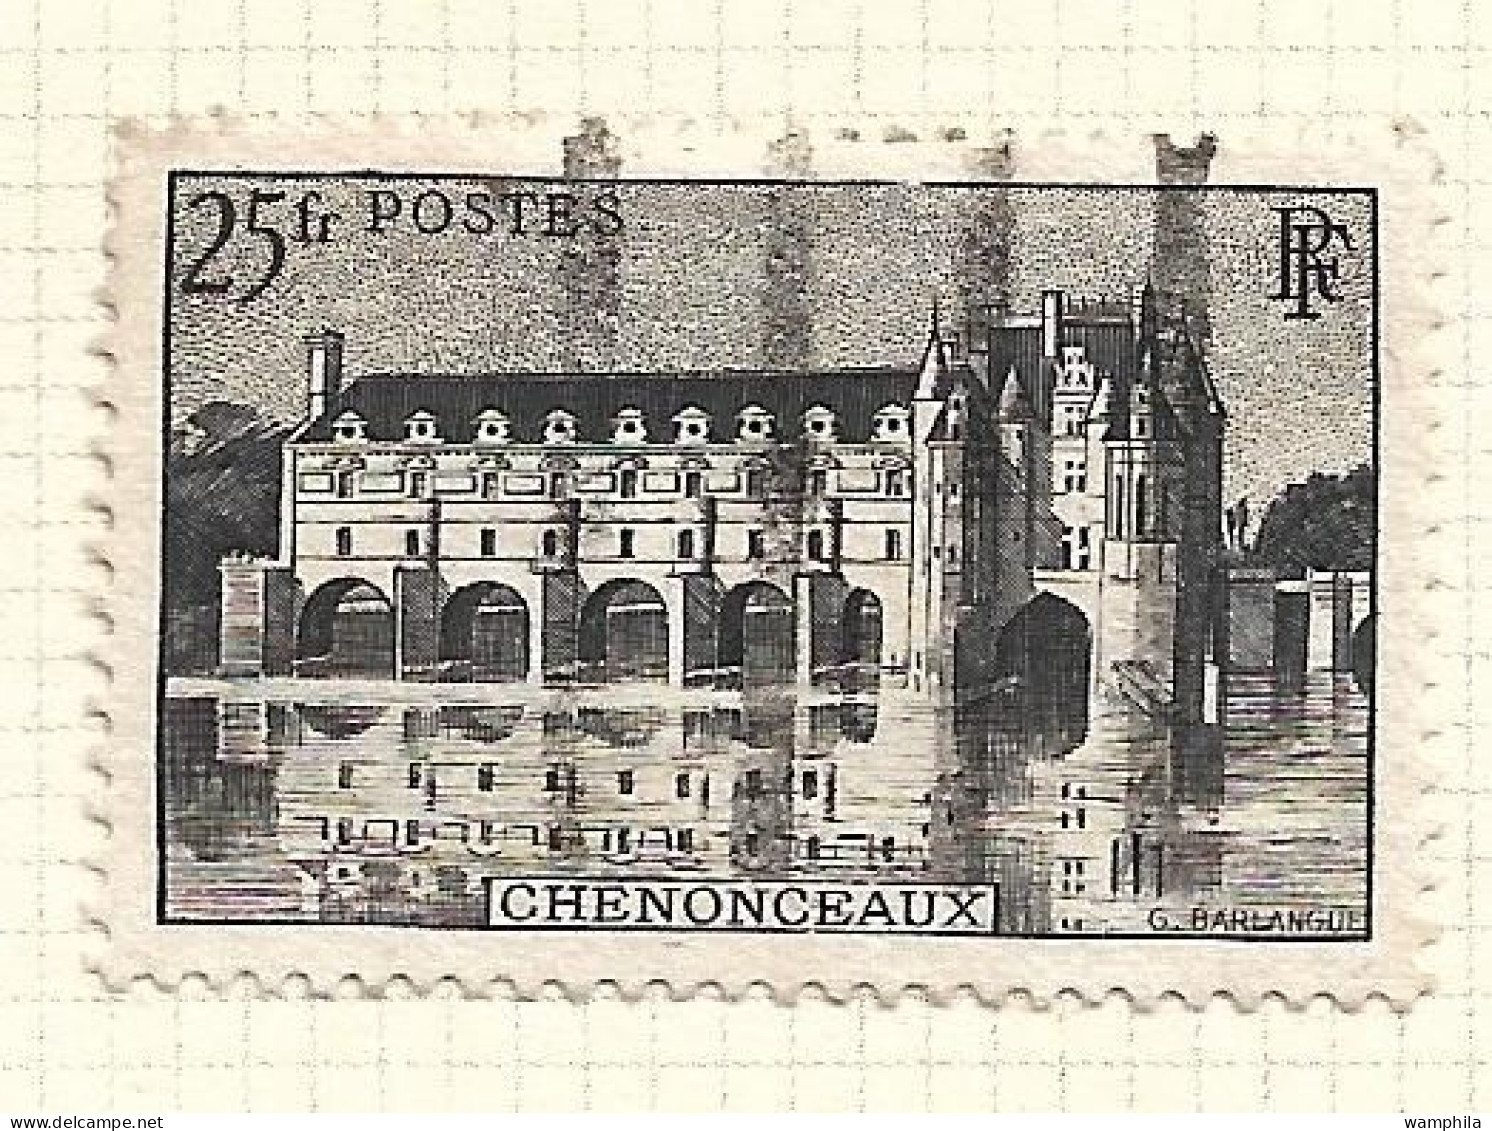 1945. 8 timbres français oblitérés Transmission télégraphique des messages codés. Cote  720€.